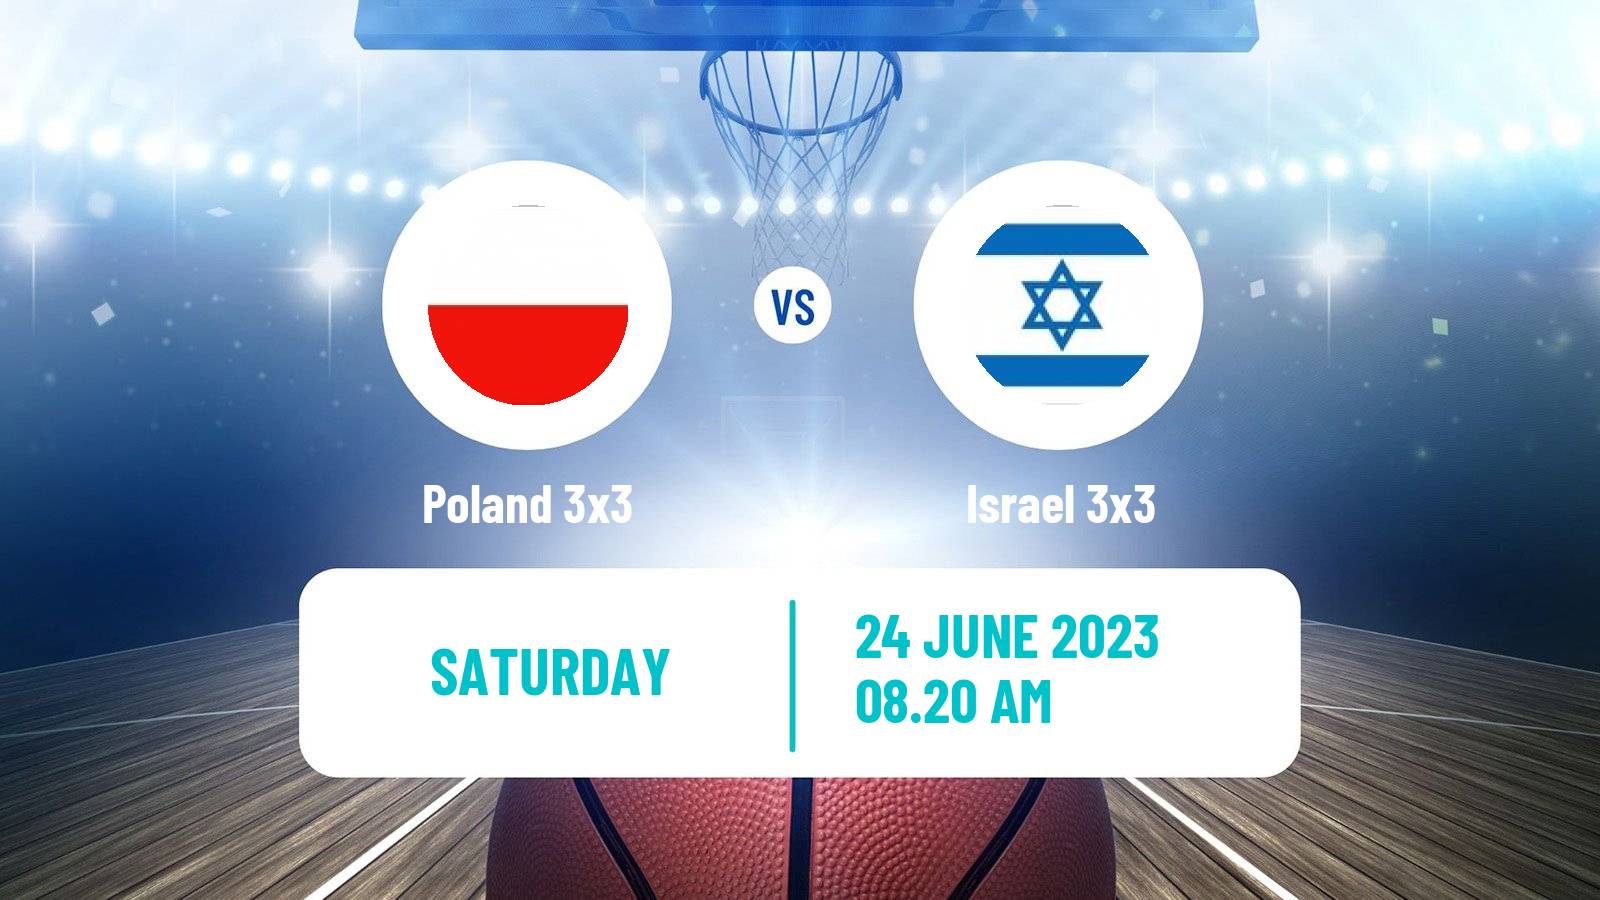 Basketball European Games 3x3  Poland 3x3 - Israel 3x3